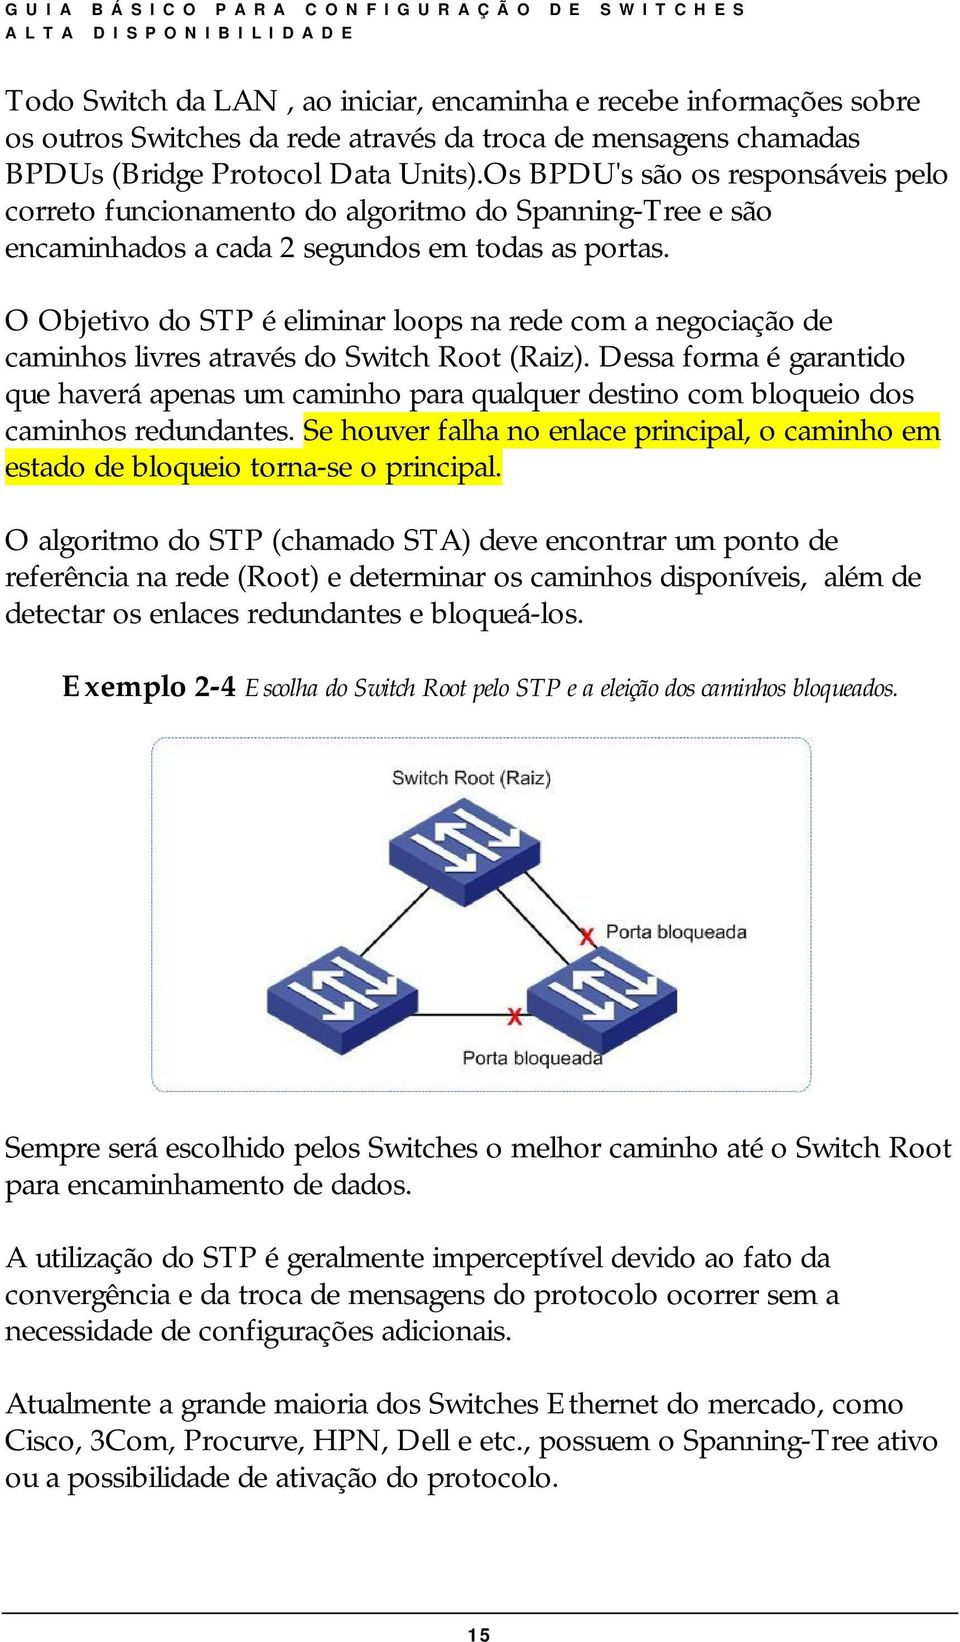 O Objetivo do STP é eliminar loops na rede com a negociação de caminhos livres através do Switch Root (Raiz).